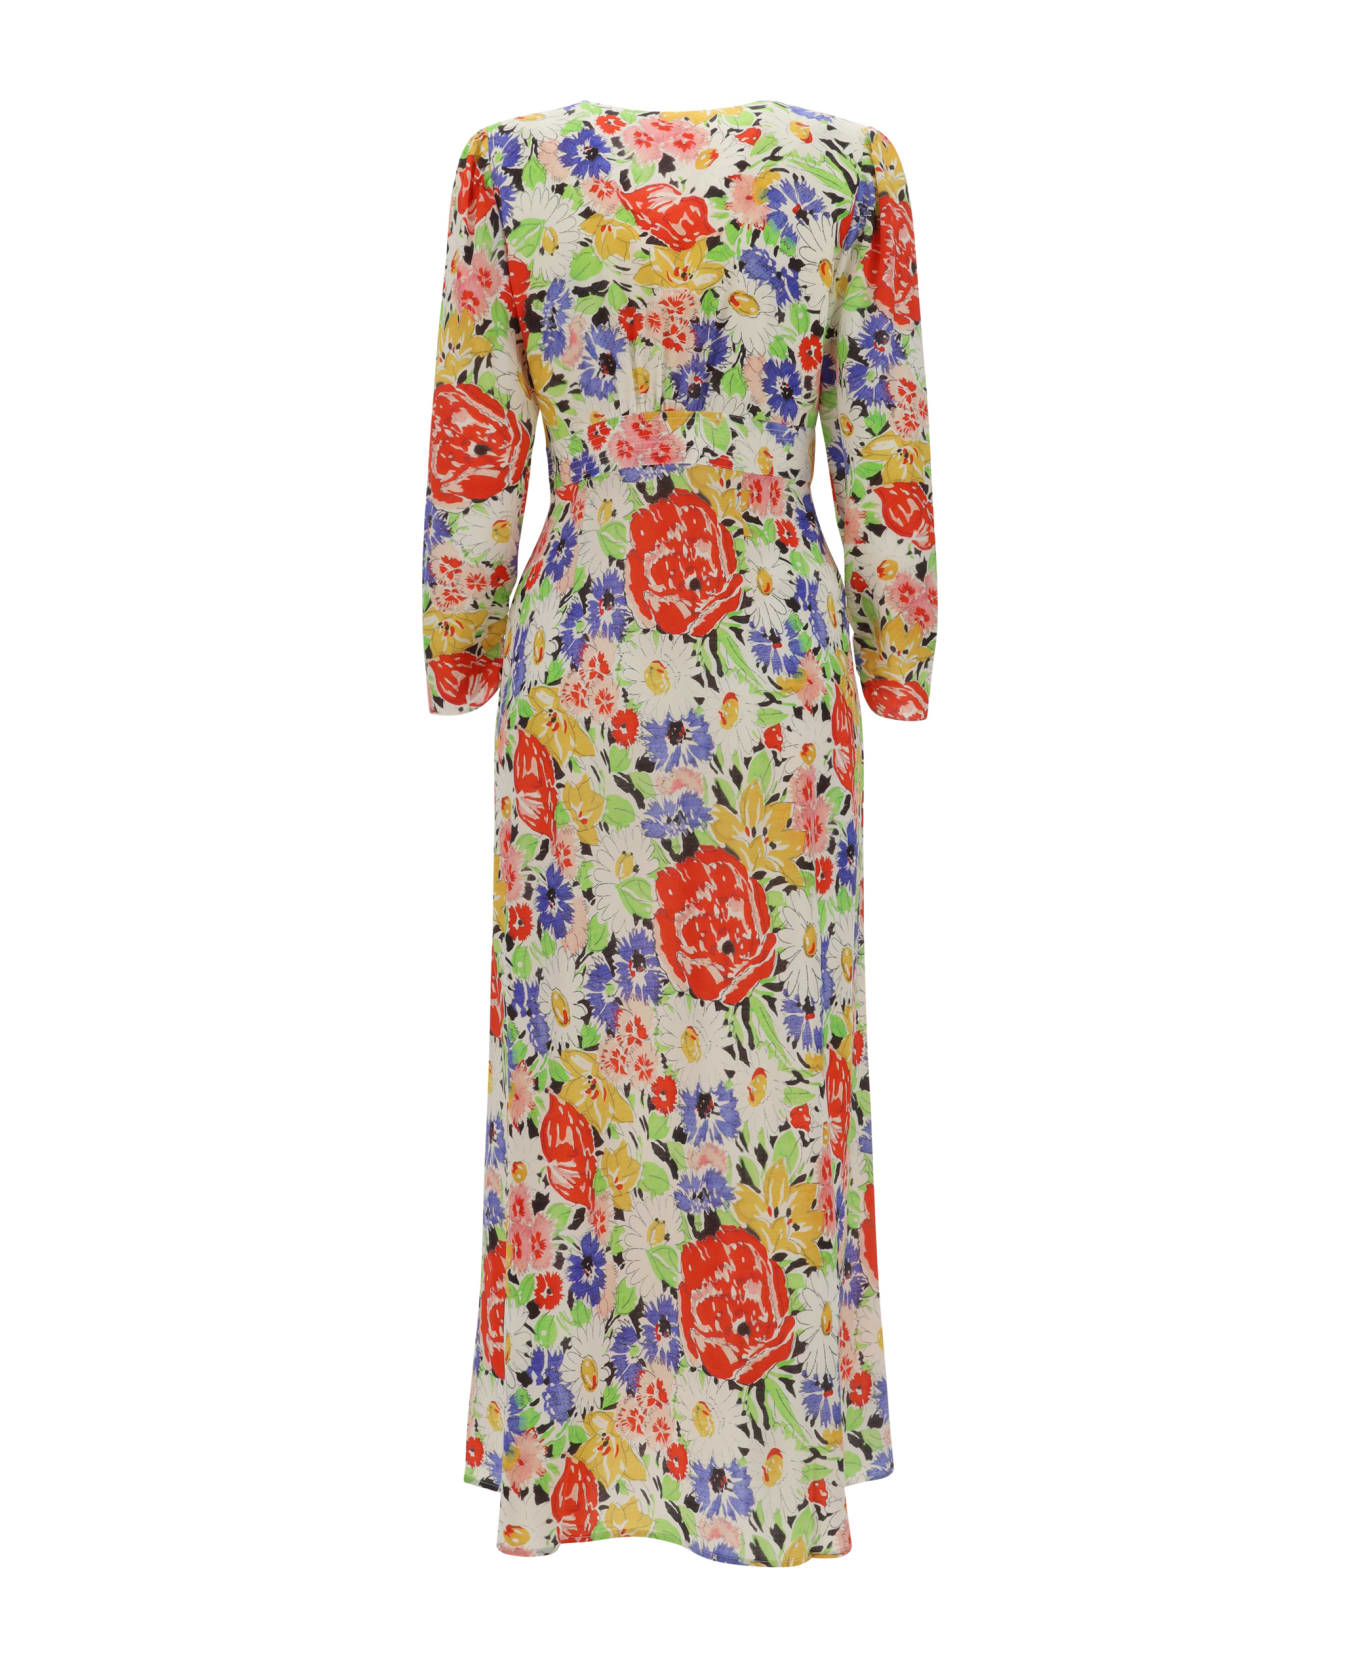 RIXO Selma Dress - Multi Spring Meadow